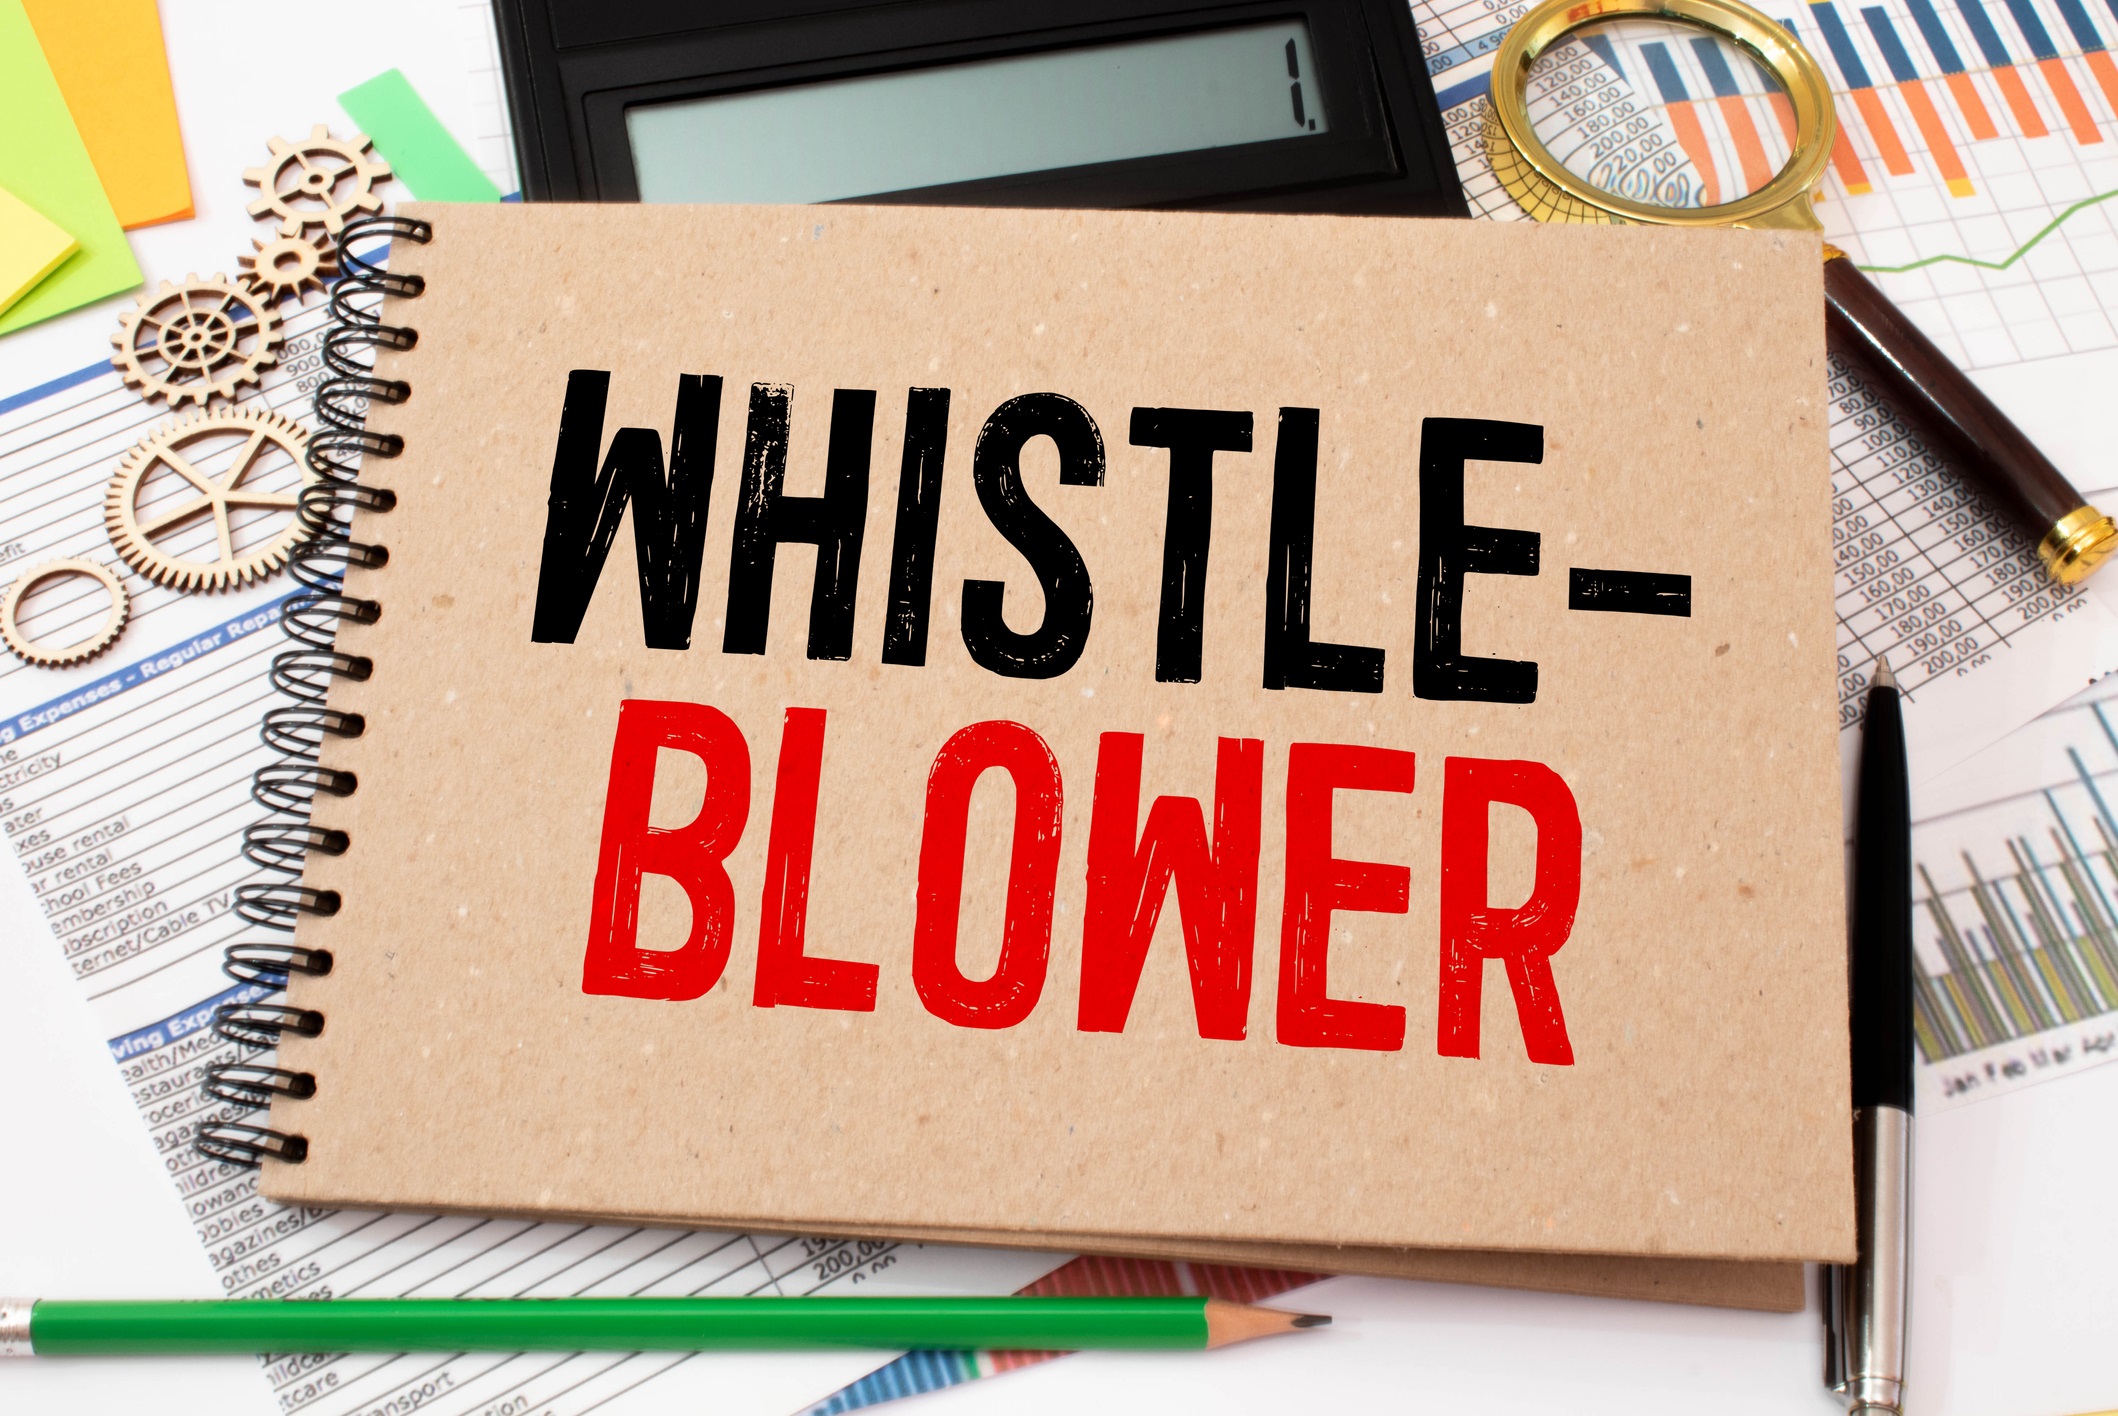 Whistleblowing: obblighi e sanzioni